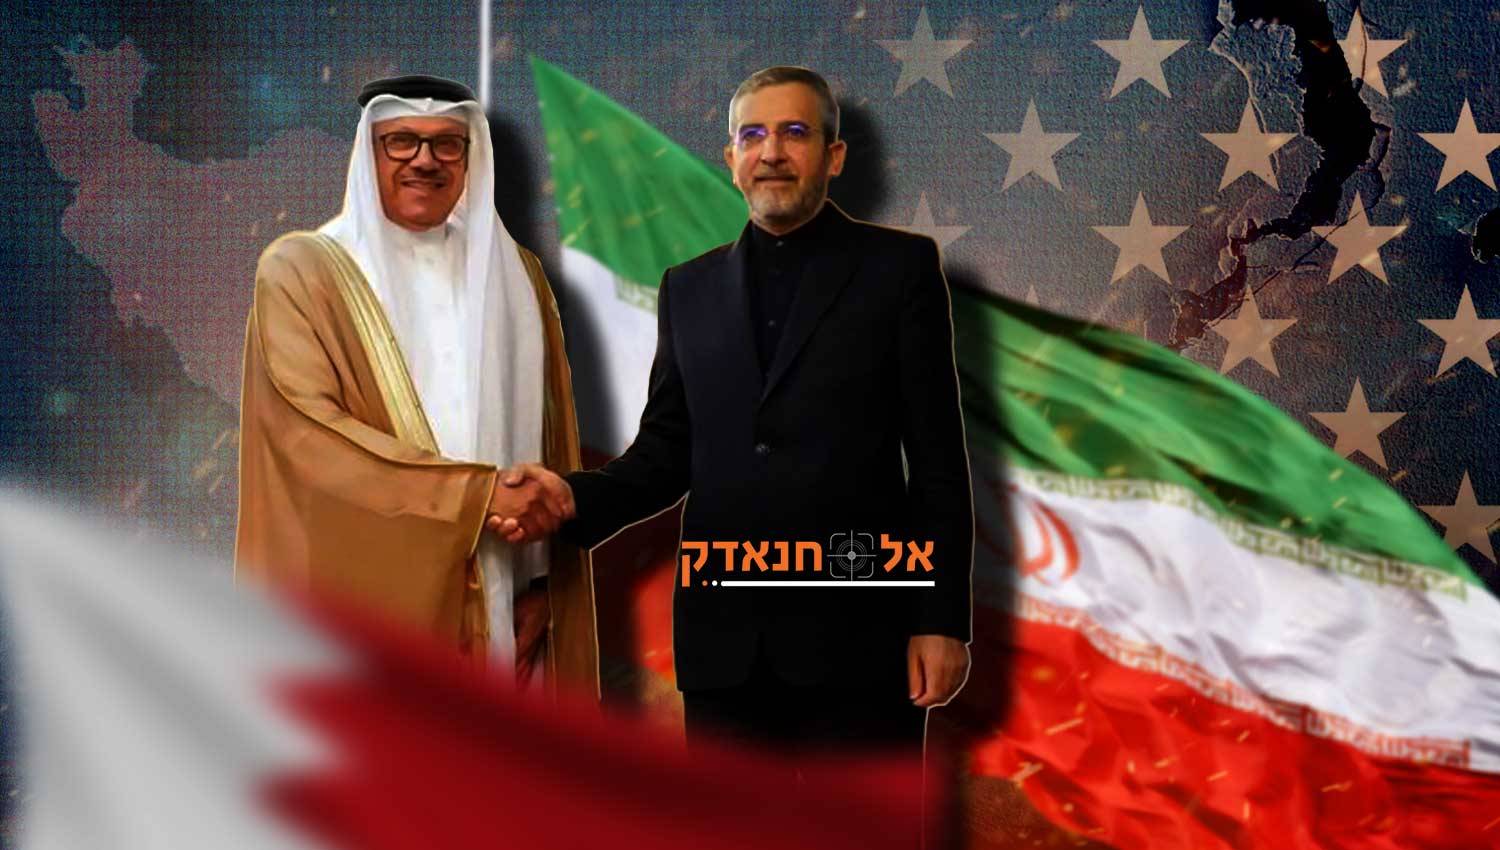 מדיה אמריקאית: ההתקרבות בין איראן לבחריין תהיה מדאיגה עבור וושינגטון